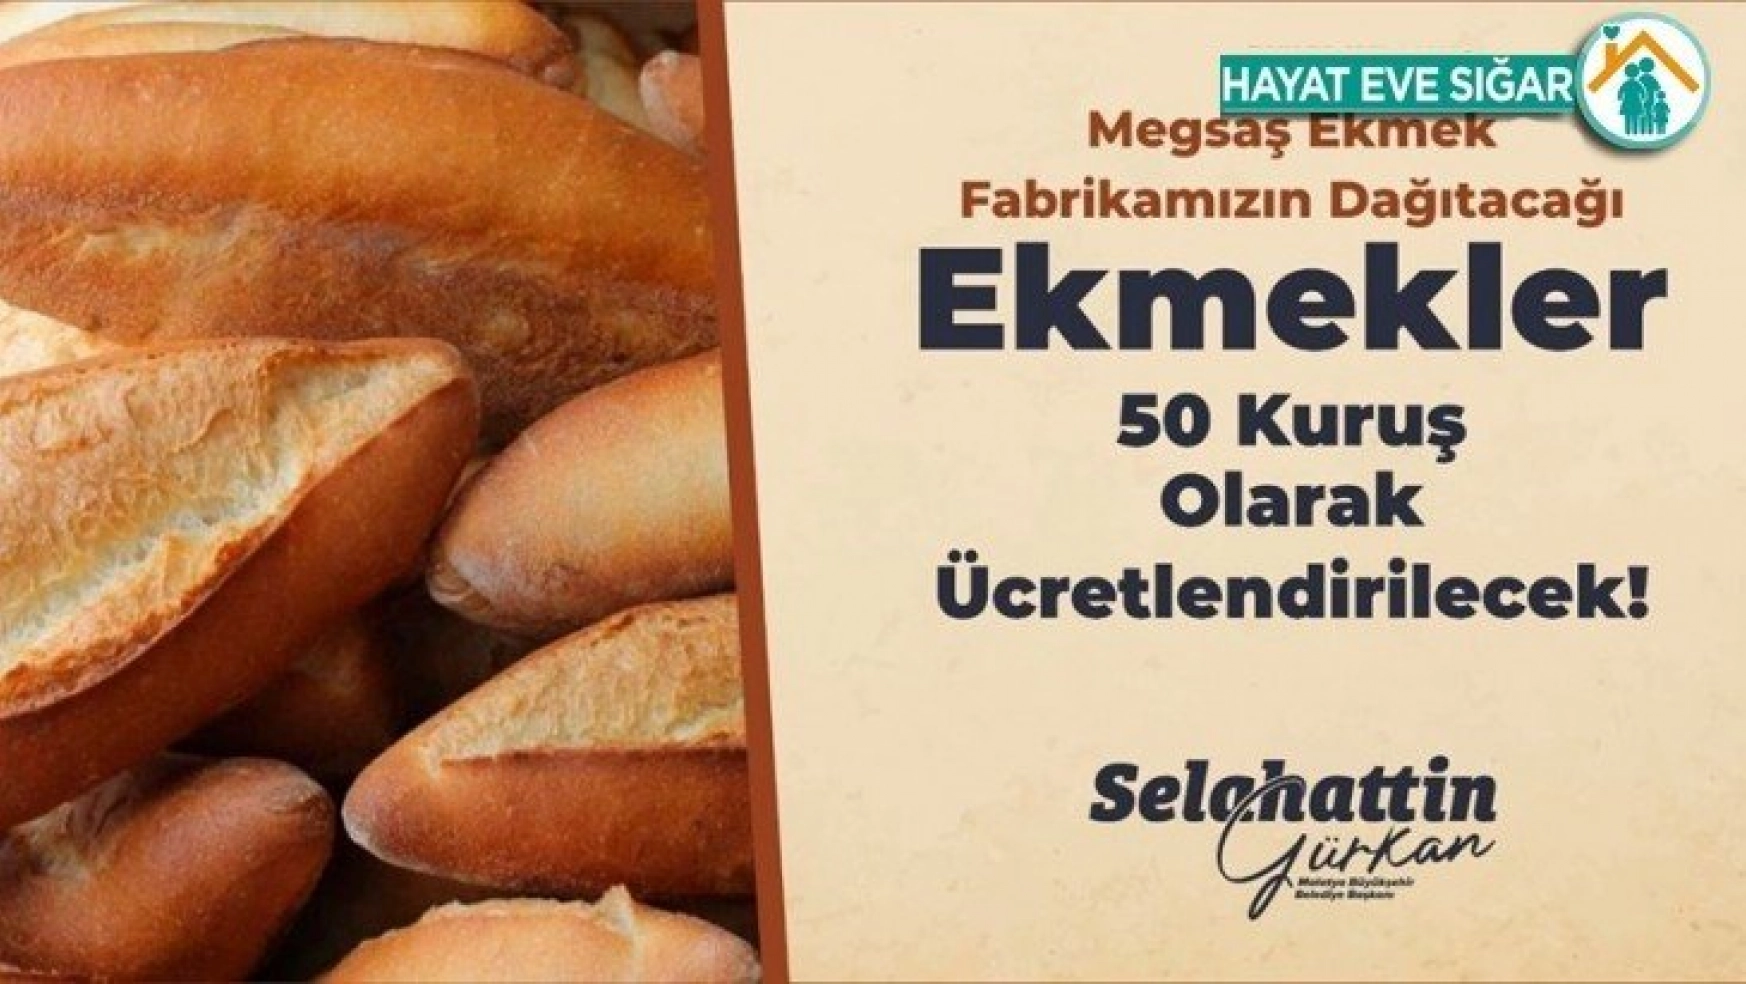 Malatya Büyükşehir Belediyesi ekmeği 50 kuruşa düşürdü